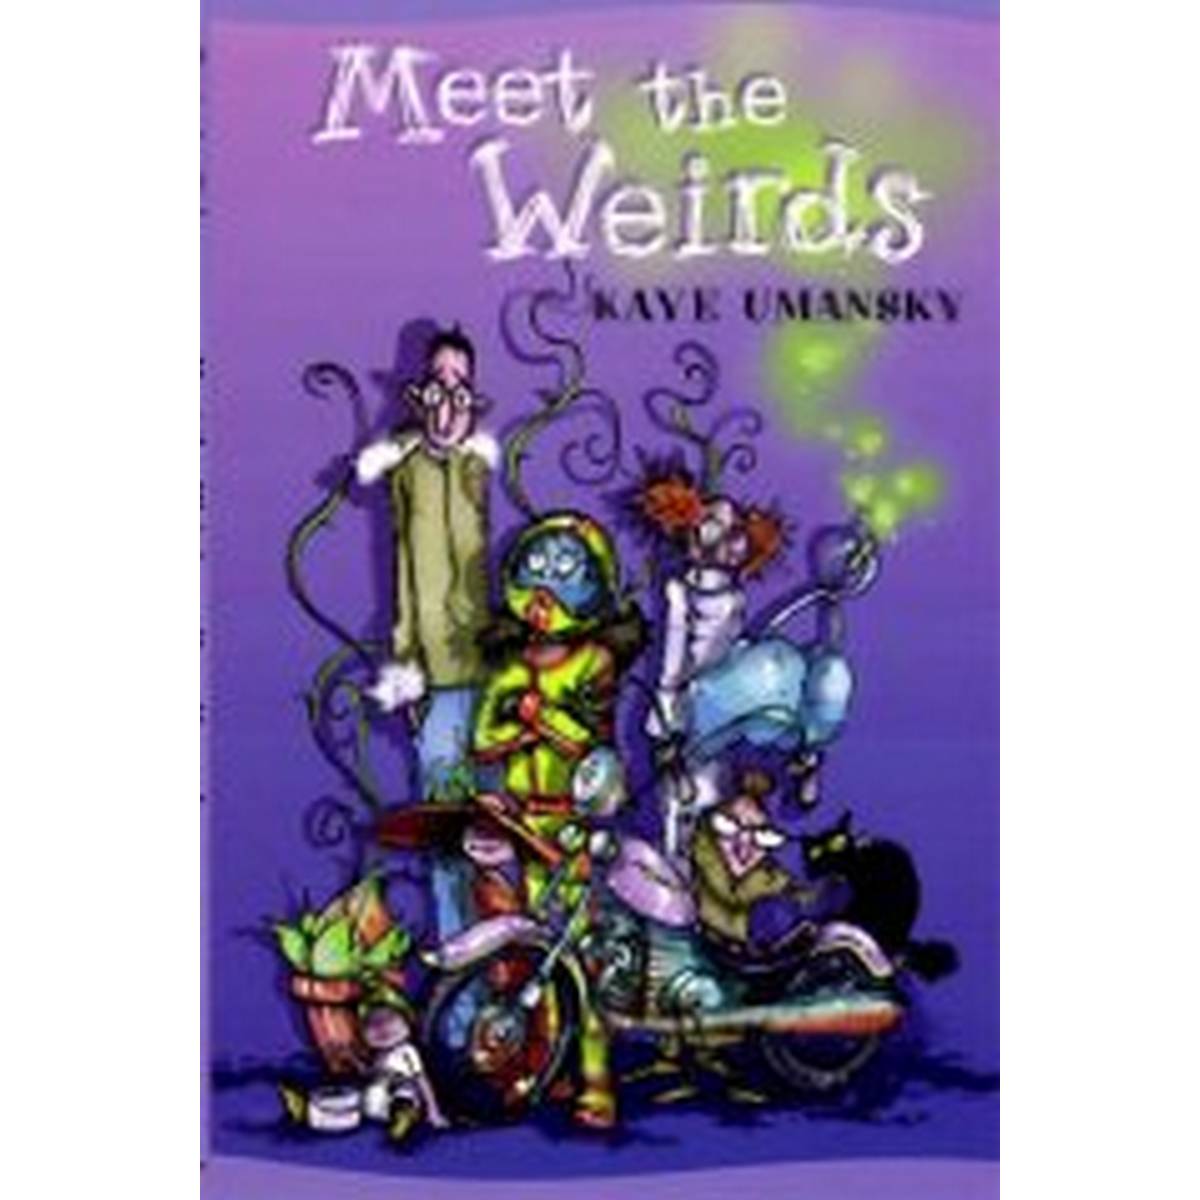 Meet the Weirds